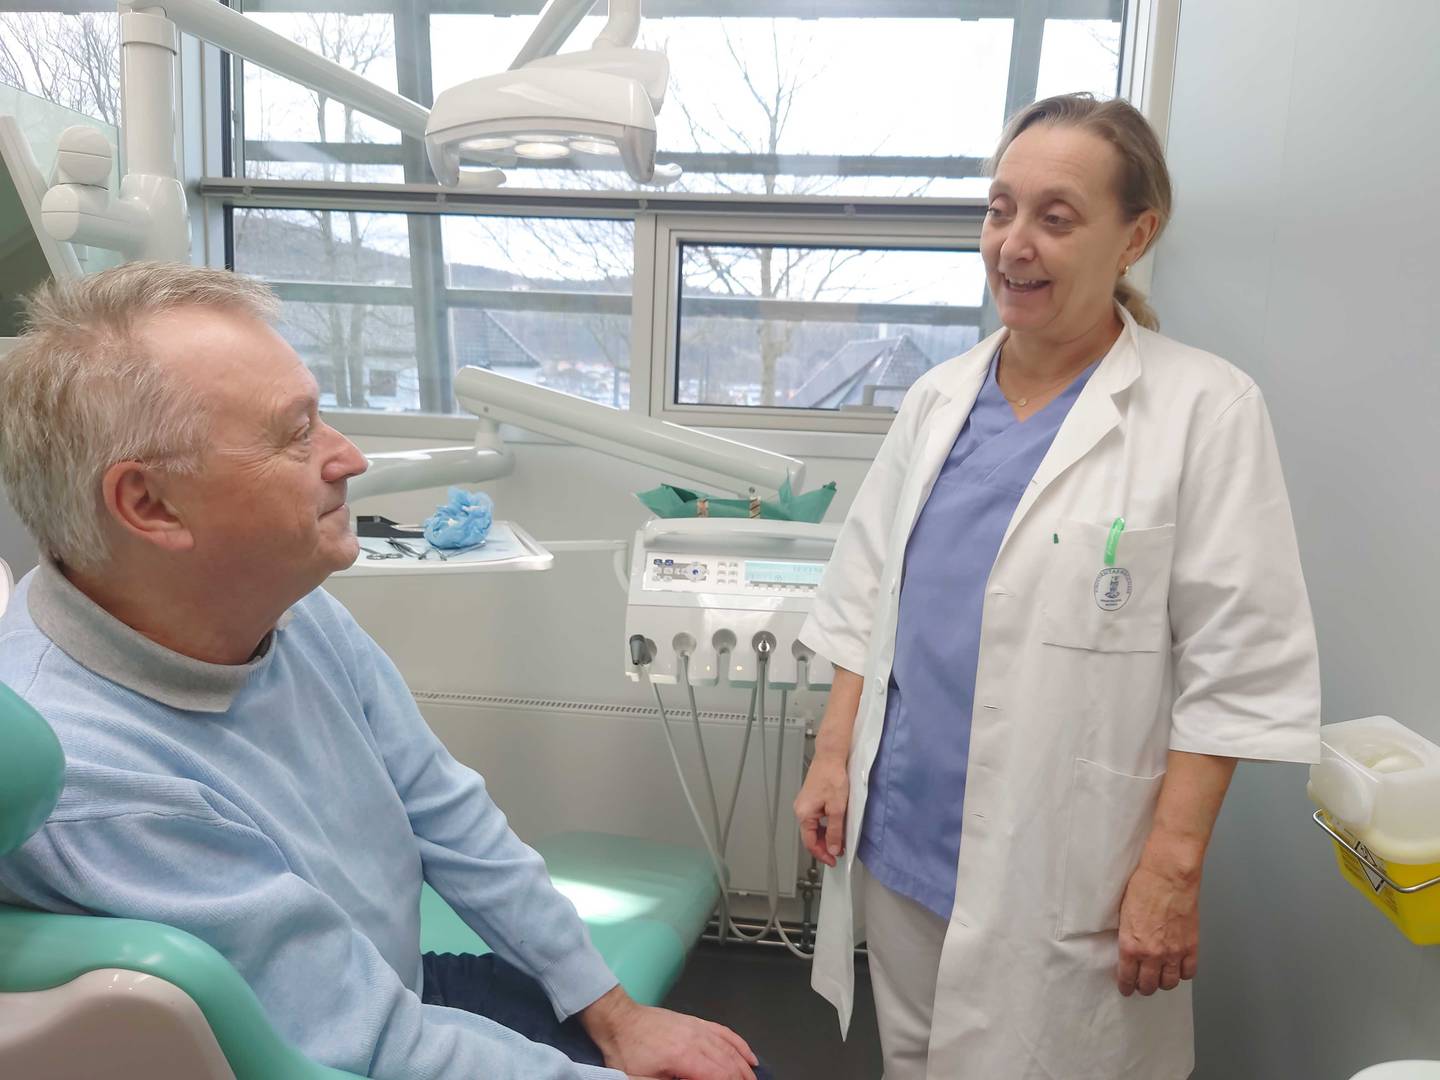 Geir Olsen og Cecilie Gjerde på Odontologen i Bergen, stamcellebehandling for kjevebein